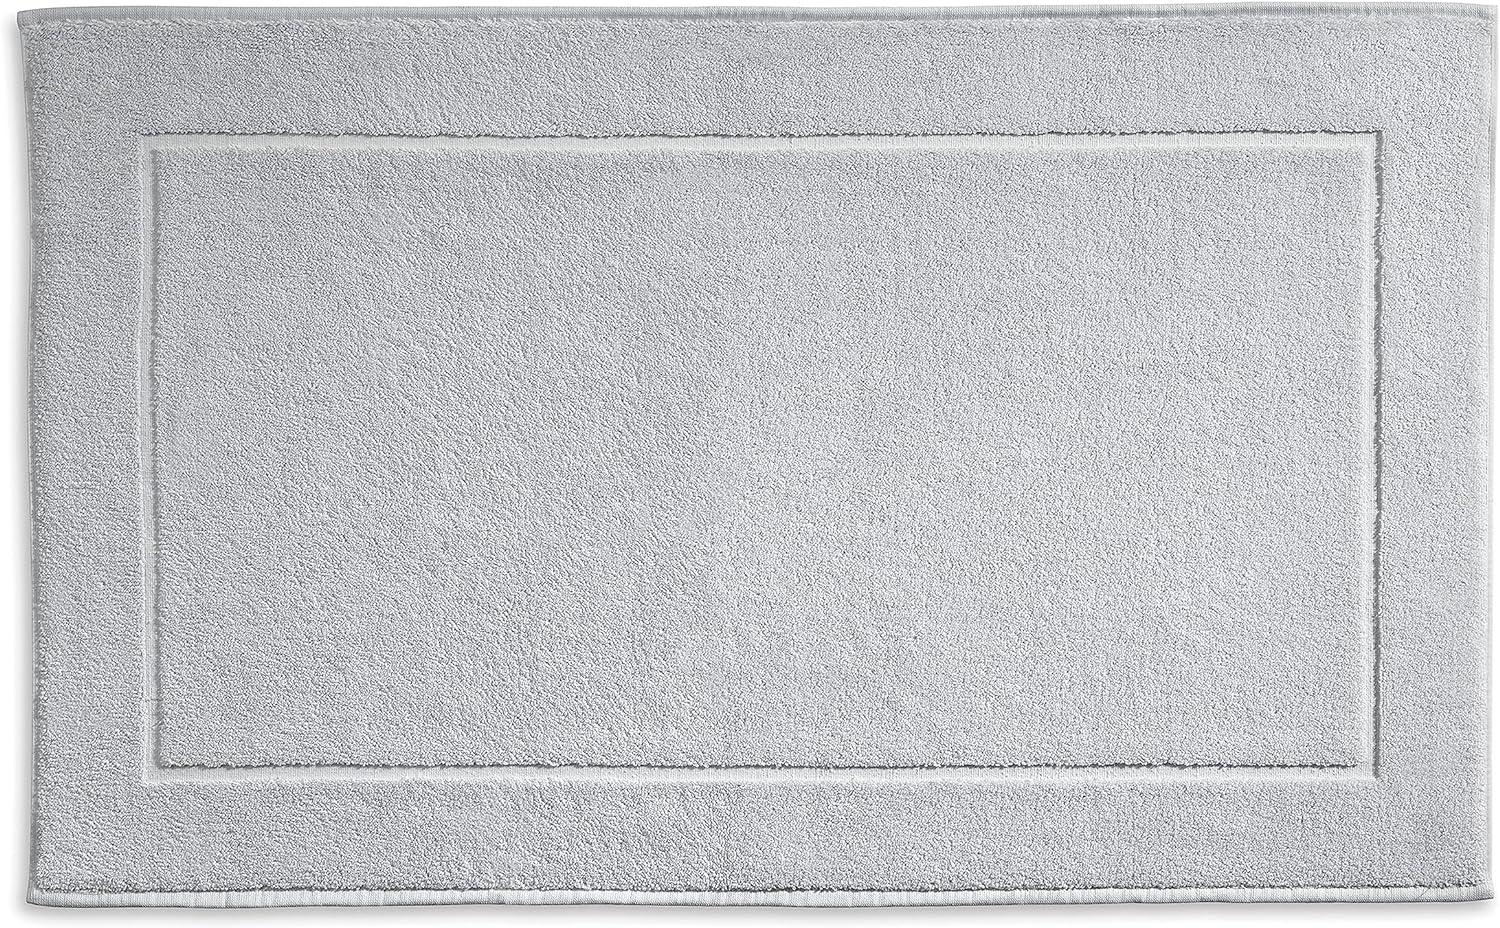 Kela Badvorleger Ladessa, 60 cm x 100 cm, 100% Baumwolle, felsgrau, waschbar bei 60° C, für Fußbodenheizung geeignet, 23482 Bild 1